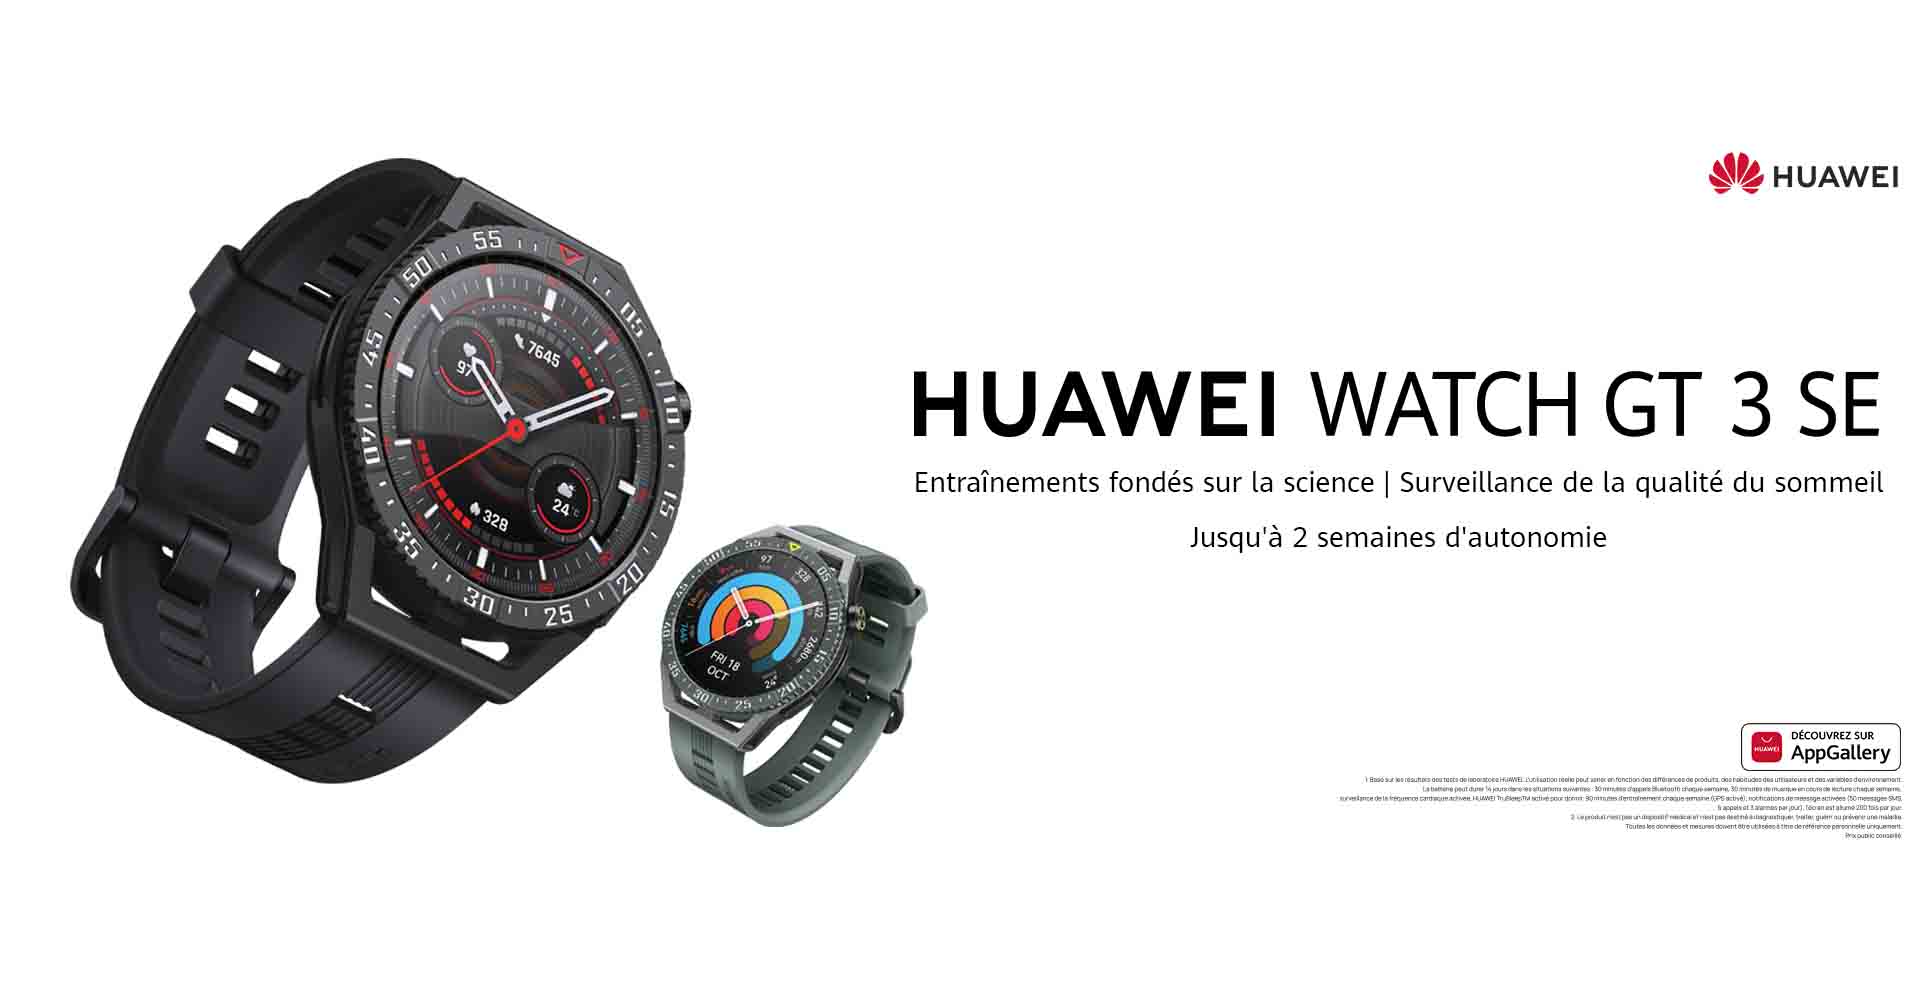  HUAWEI WATCH GT 3 SE disponible en Tunisie: Une montre pour tous ceux qui cherchent leur première smartwatch